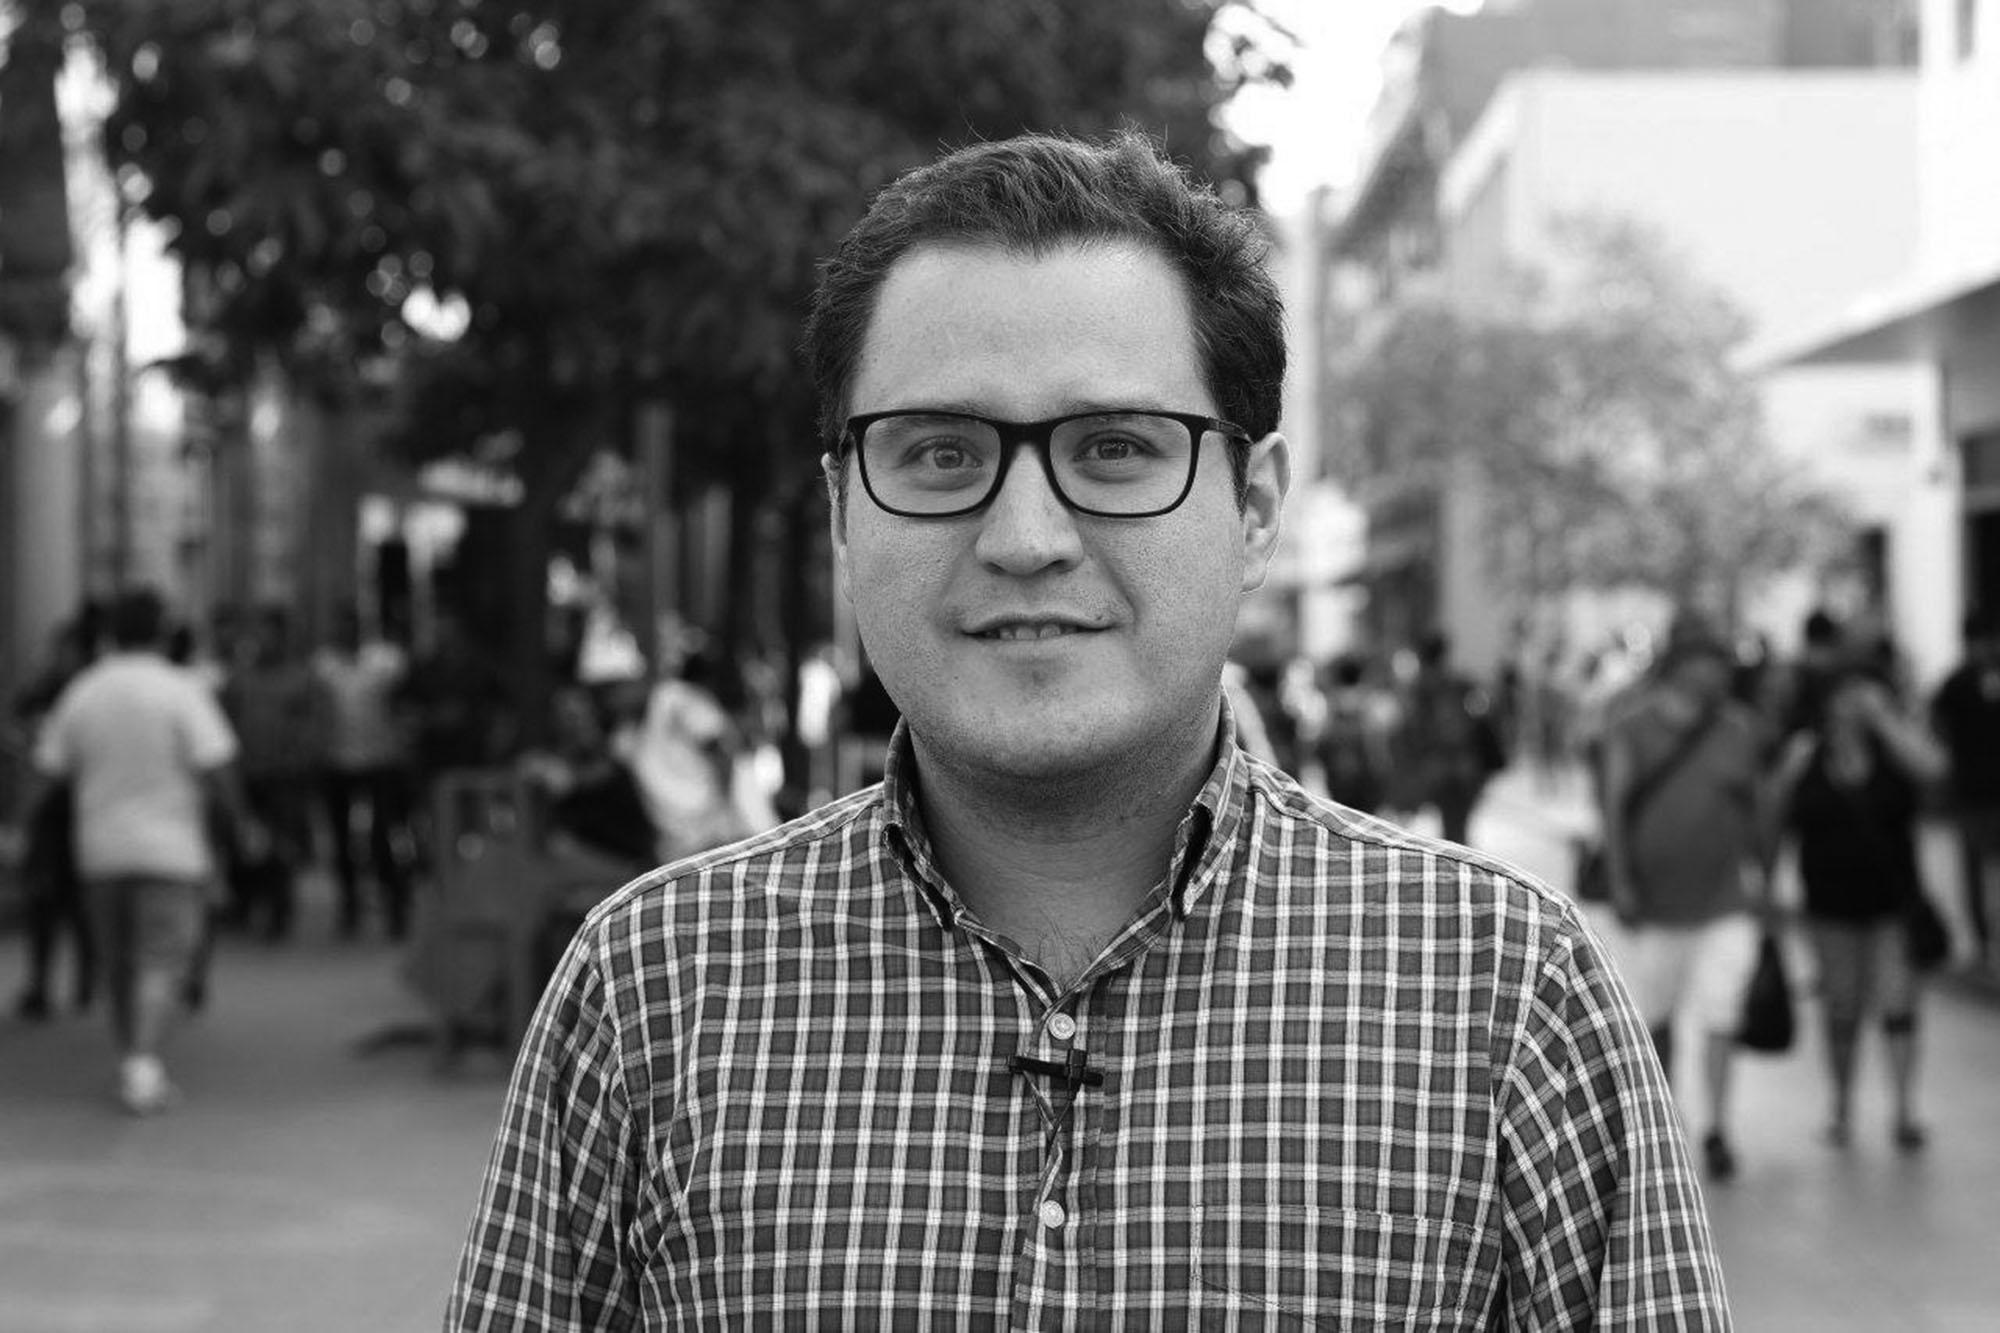 Álvaro Montenegro, periodista y uno de los siete guatemaltecos que crearon el movimiento #RenunciaYa, después rebautizado como #JusticiaYa, central en las protestas que impulsaron la renuncia del presidente de Guatemala Otto Pérez Molina.